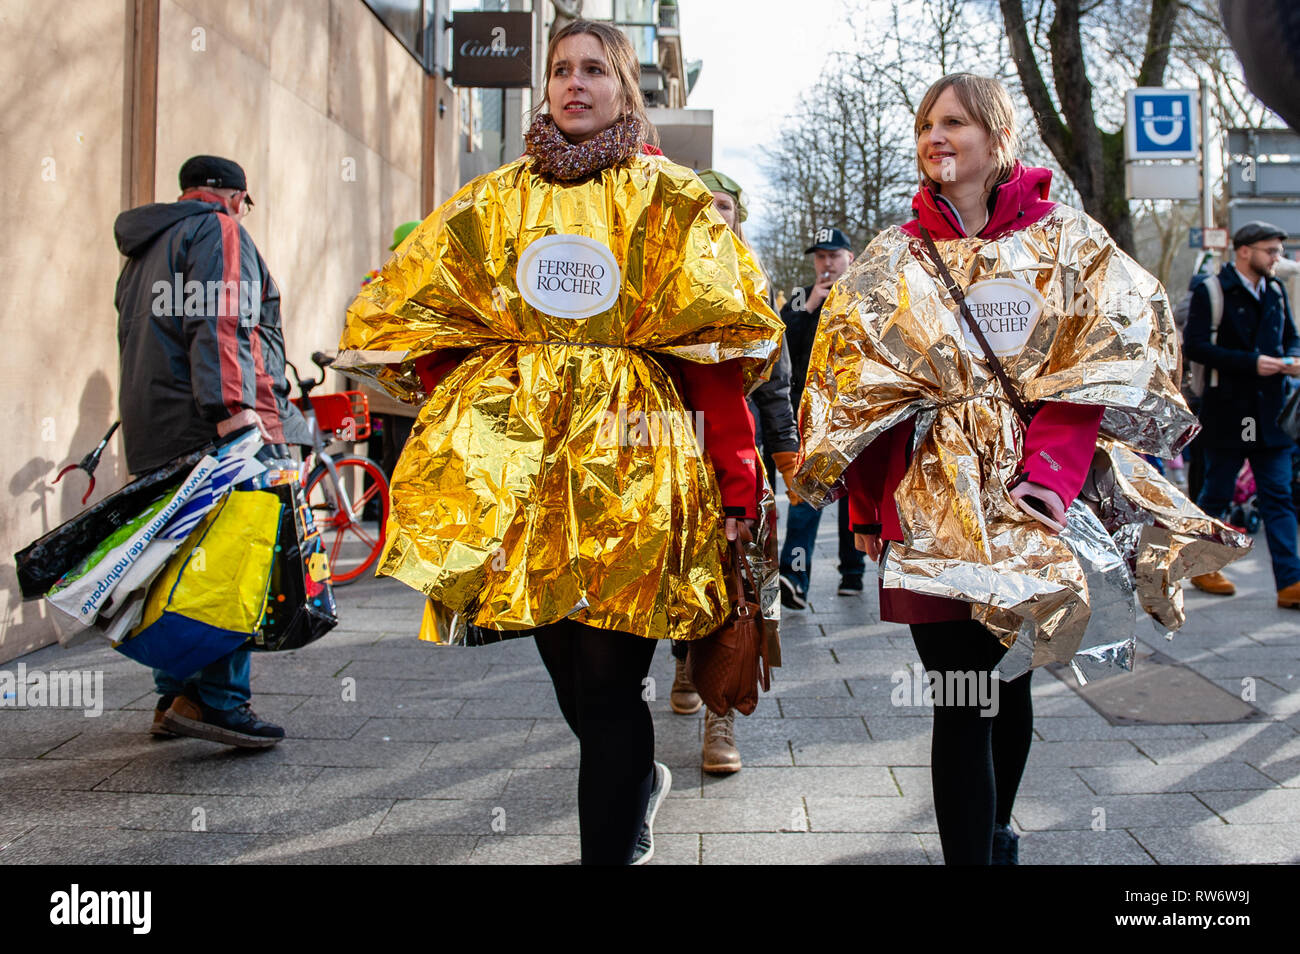 Zwei Frauen sind eine Ferrero Roche Kostüm während der Parade zu tragen. In  Düsseldorf, der Kalender der Karneval Veranstaltungen verfügt über nicht  weniger als 300 Karneval zeigt, Bälle, Jubiläen, Empfänge und Kostüm